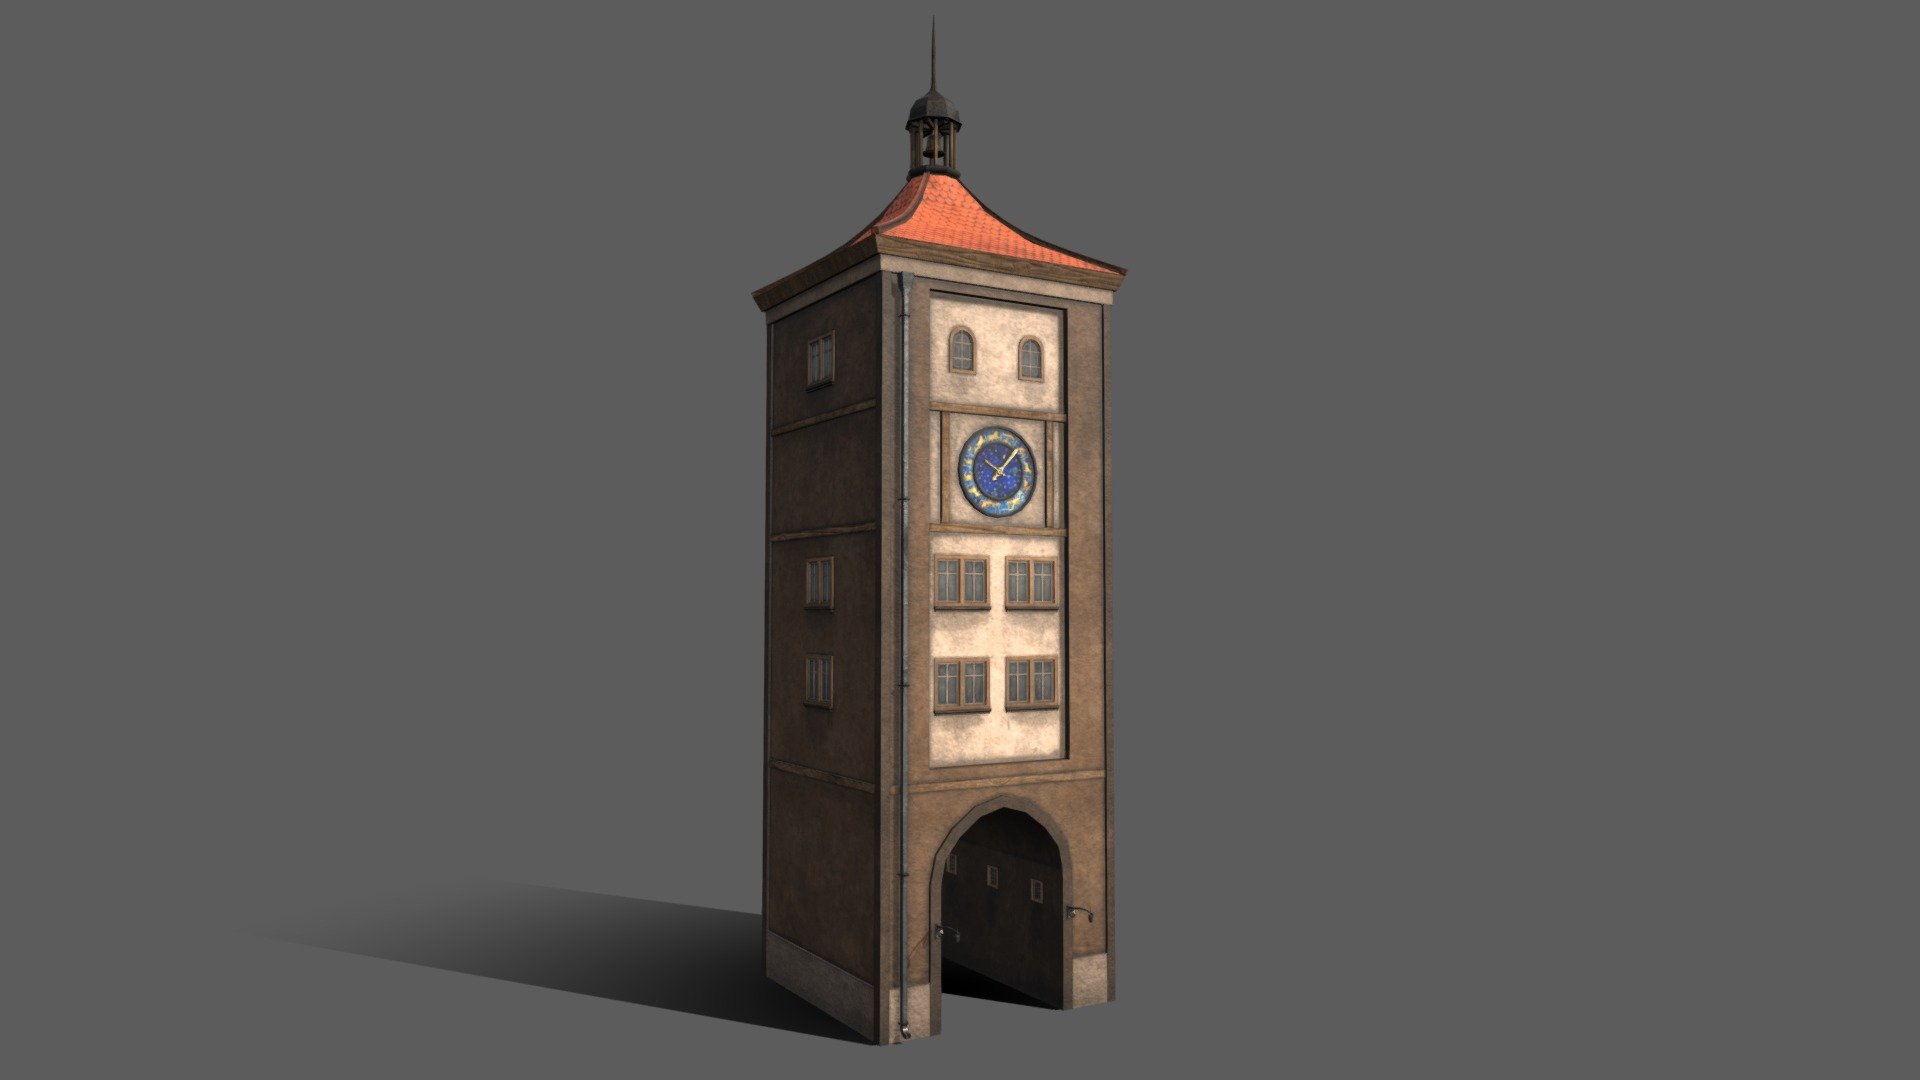 The big ben clock tower | Clock tower, Cute laptop wallpaper, Watch tower